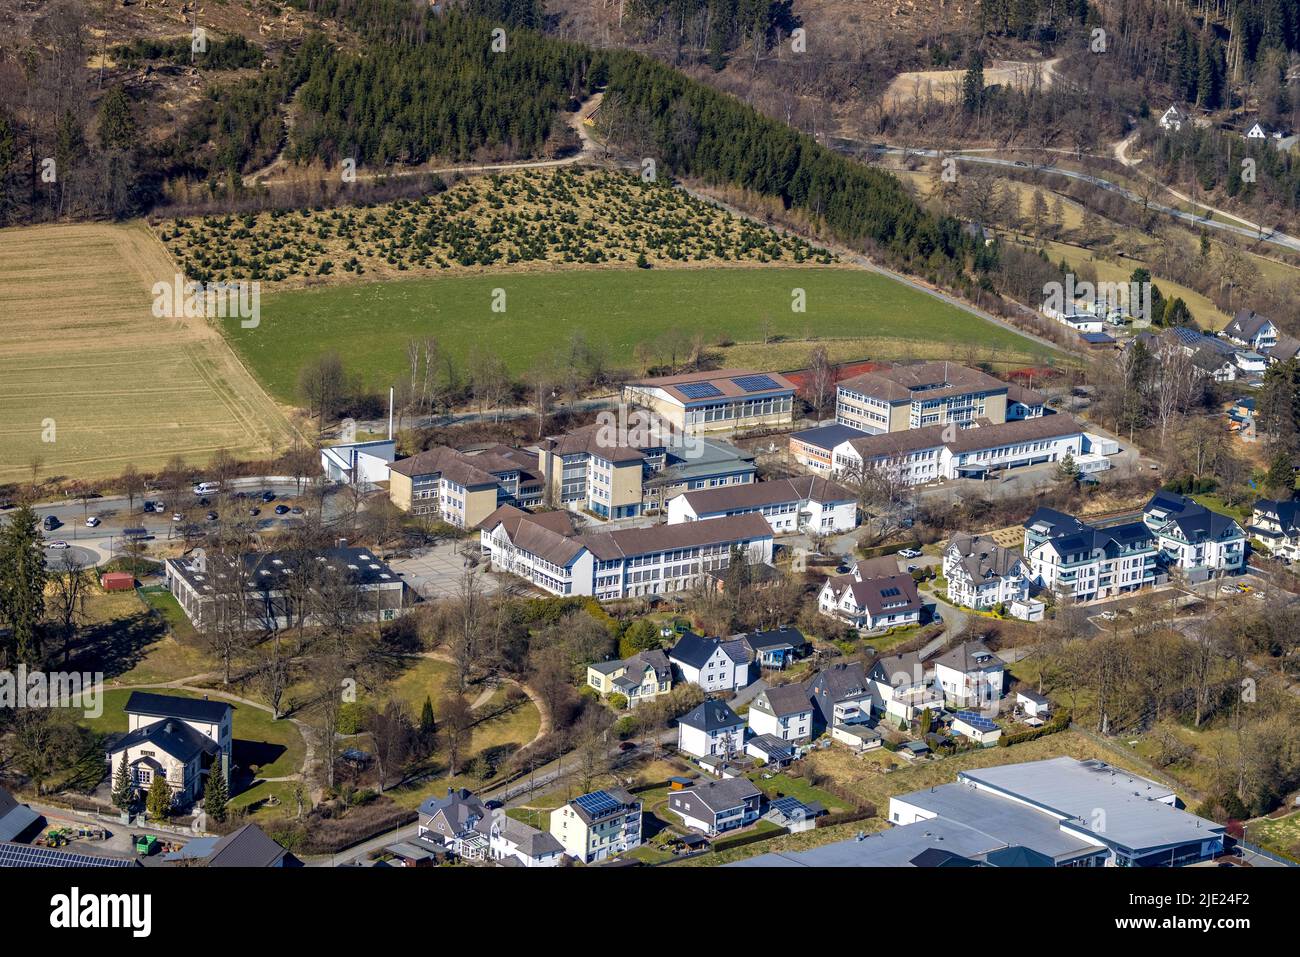 École secondaire Eslohe et Raphael School Primary School, Eslohe, Eslohe, pays aigre, Rhénanie-du-Nord-Westphalie, Allemagne, Realschule Eslohe et Raphaelsc Banque D'Images